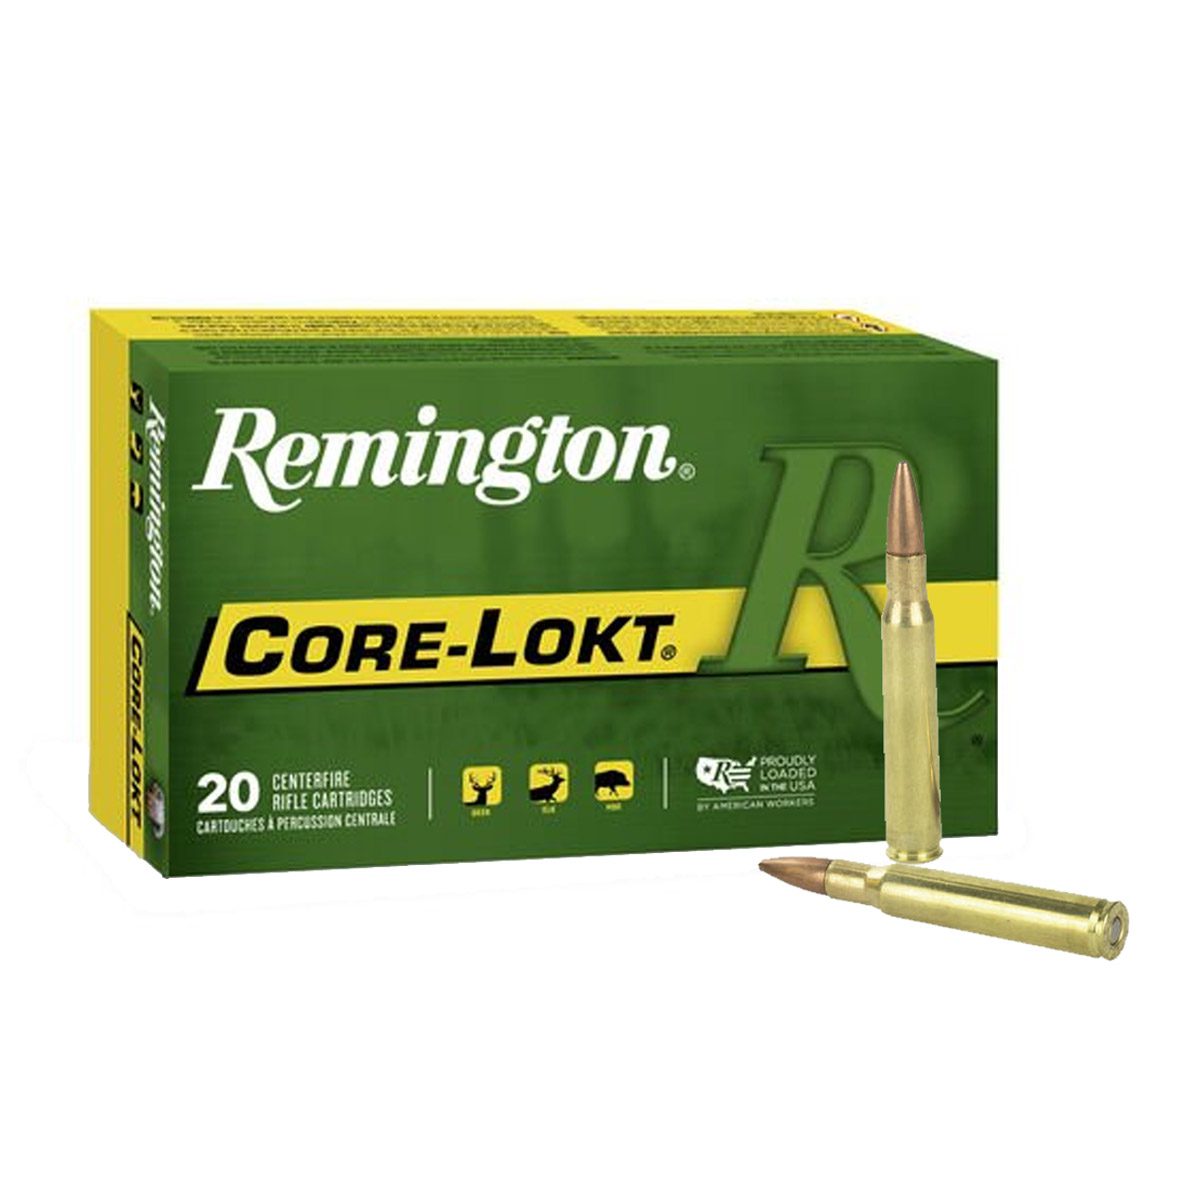 Remington Core-Lokt 30-06 SPRG. 180 gr. – 20 Rounds